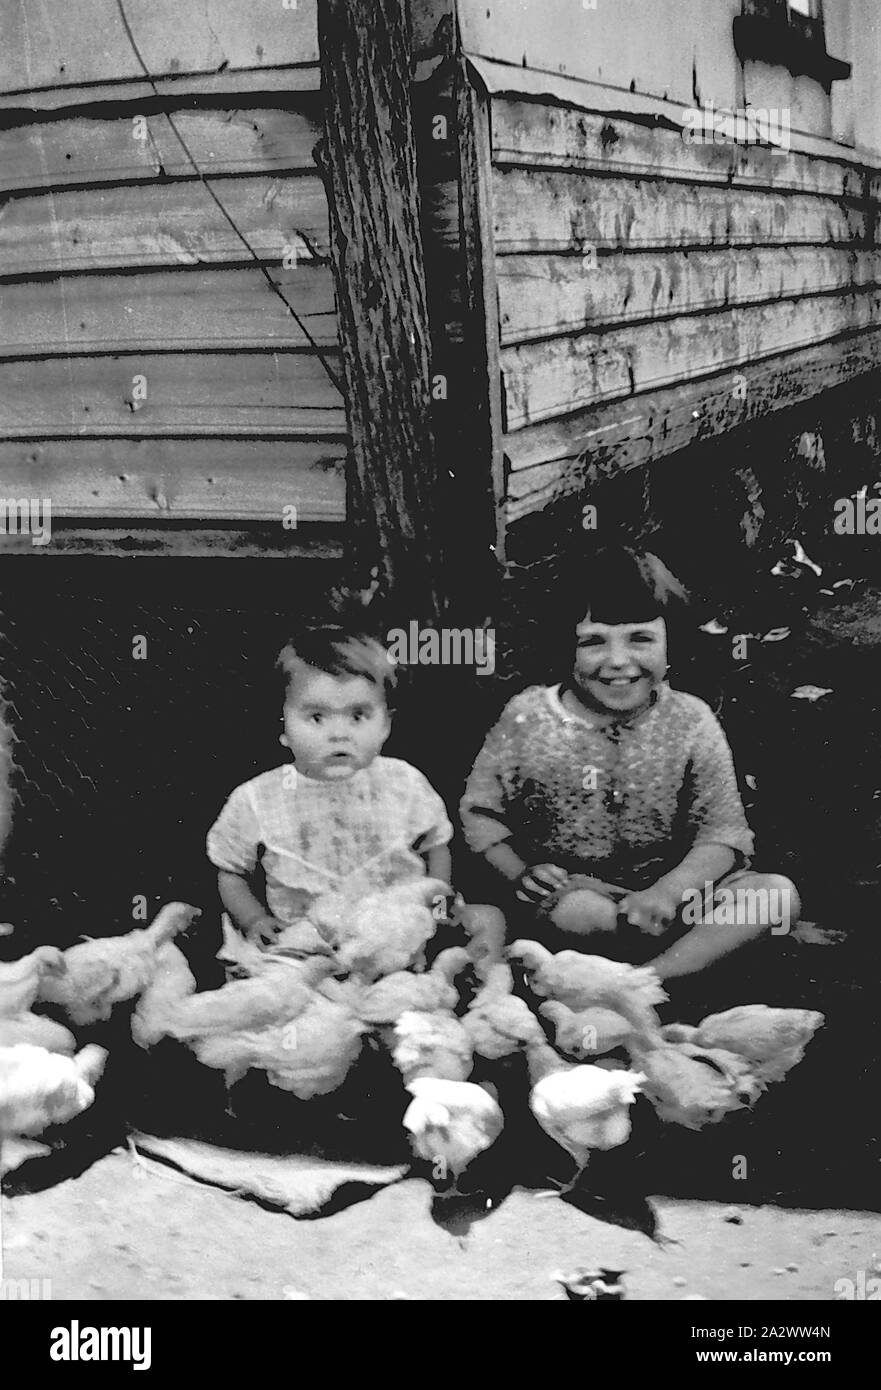 Ginquim - Négatif, Victoria, 1936, deux petites filles nourrir les poulets. La maison avait cinq rangées de ciment puis weatherboards de draps. Le pôle pin tenu le fil de téléphone. Le fil de poulet autour de la chambre d'enfants gardés, d'animaux et déchets provenant de sous la maison Banque D'Images